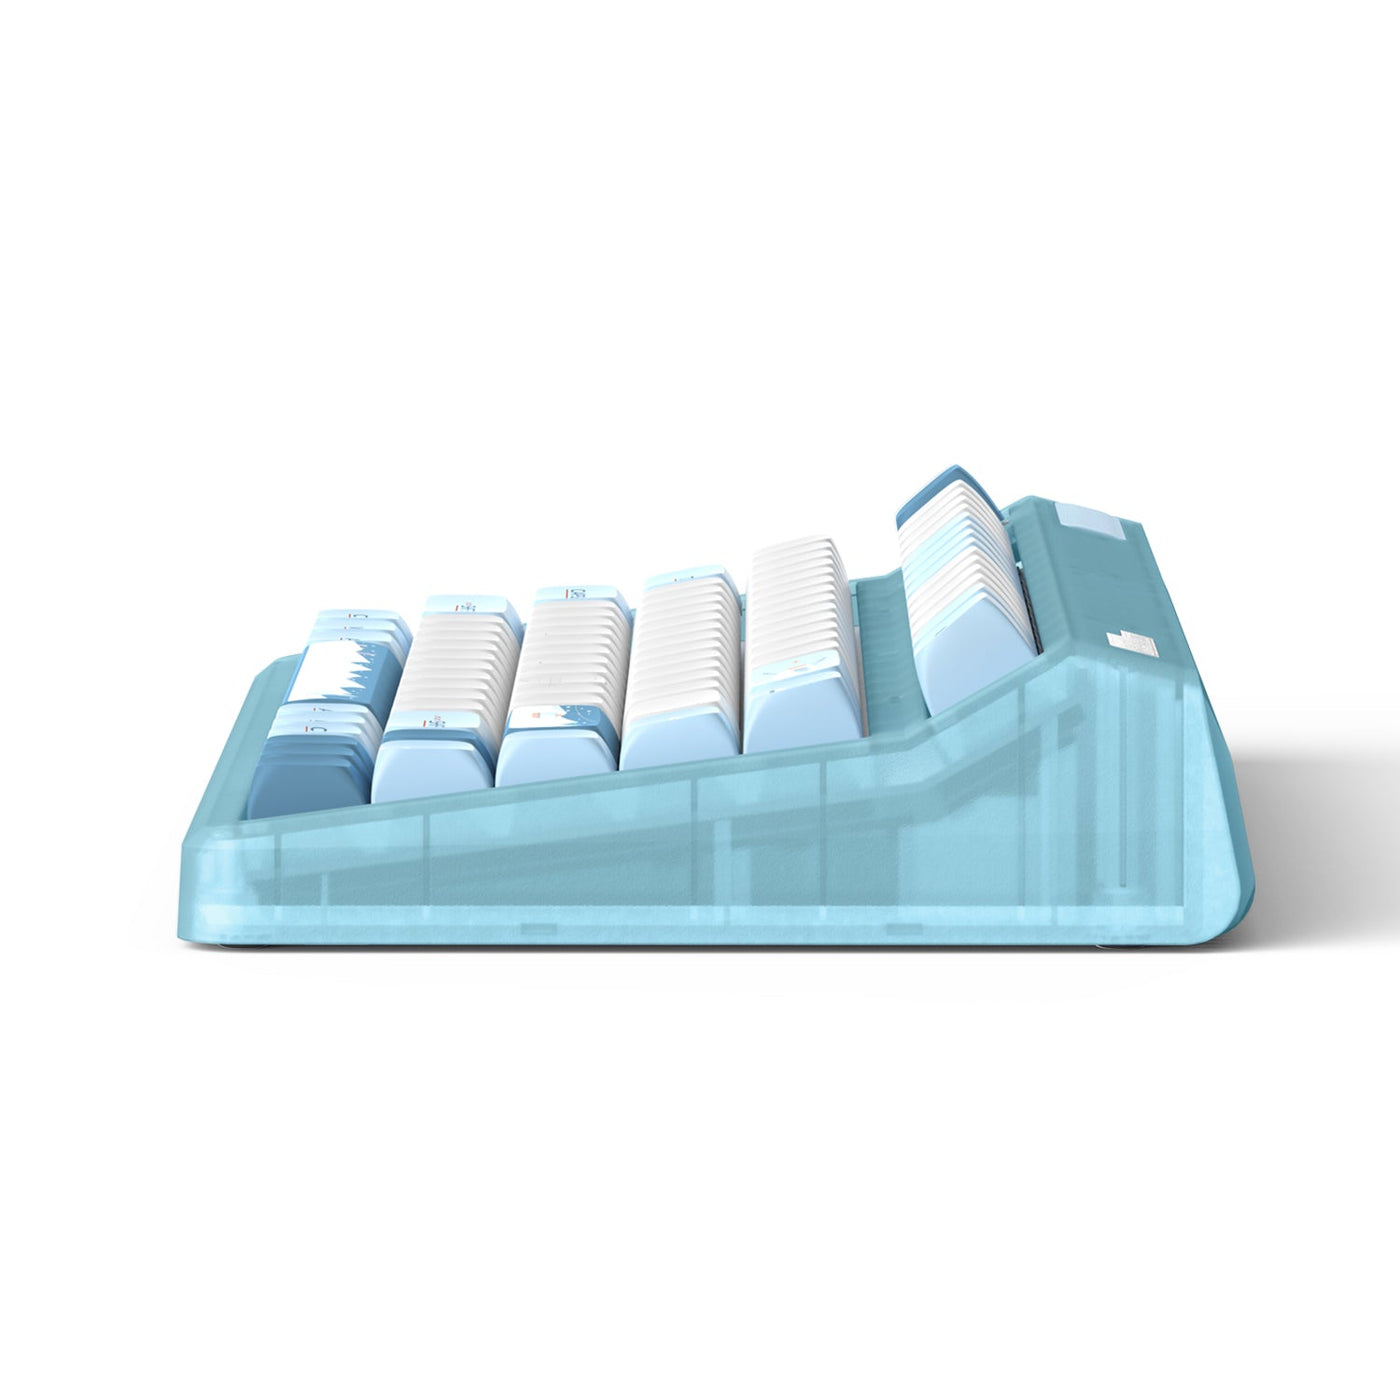 IQUNIX OG80 Wintertide Wireless Mechanical Keyboard